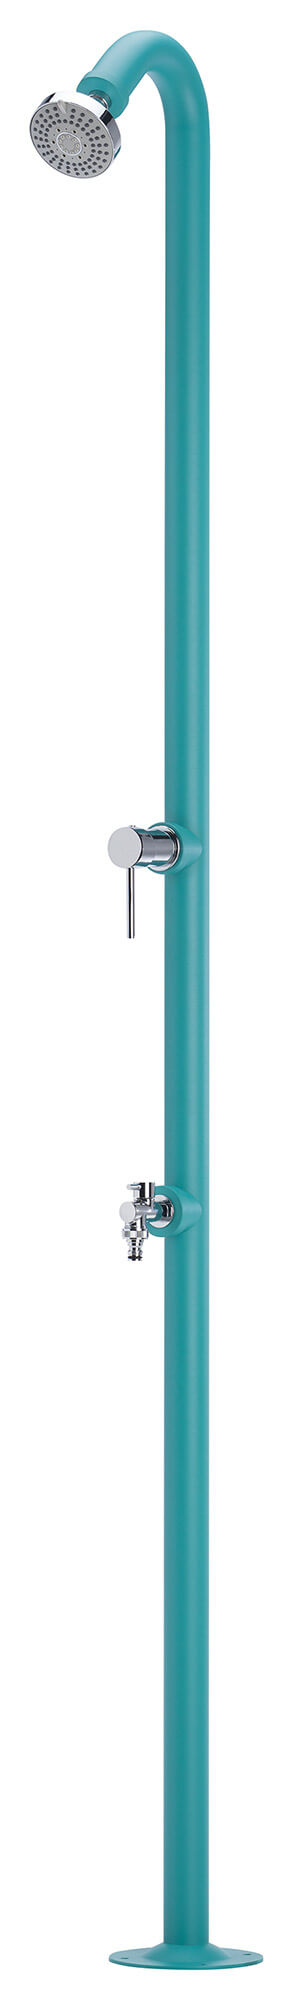 Douche de jardin avec mitigeur turquoise Belfer 42D4 sconto